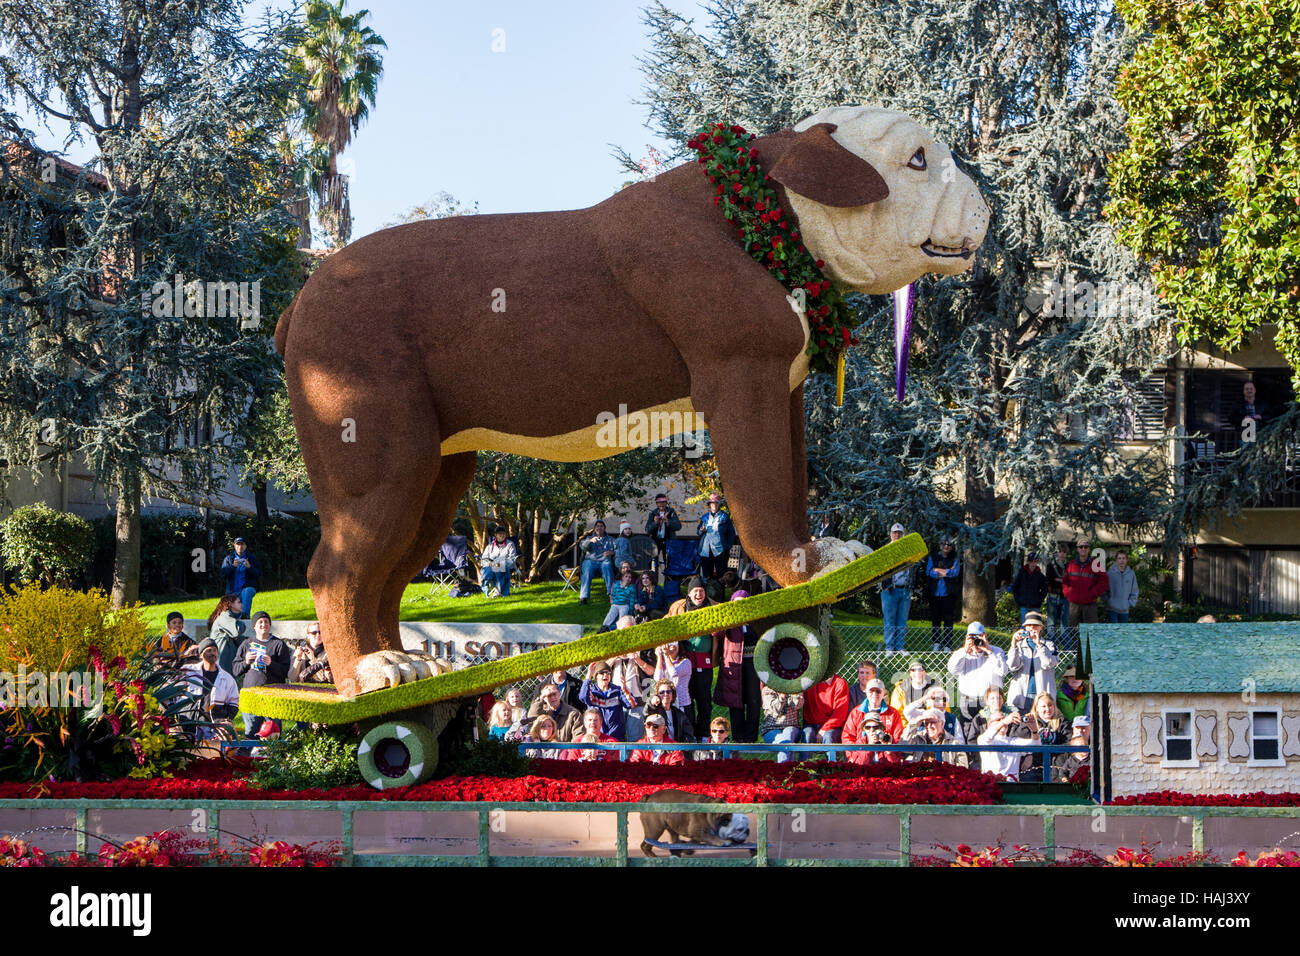 Gran Perro skateboarding en carroza decorada con flores en el día de Año Nuevo anual Rose Bowl Parade, Pasadena, California, EE.UU. Foto de stock